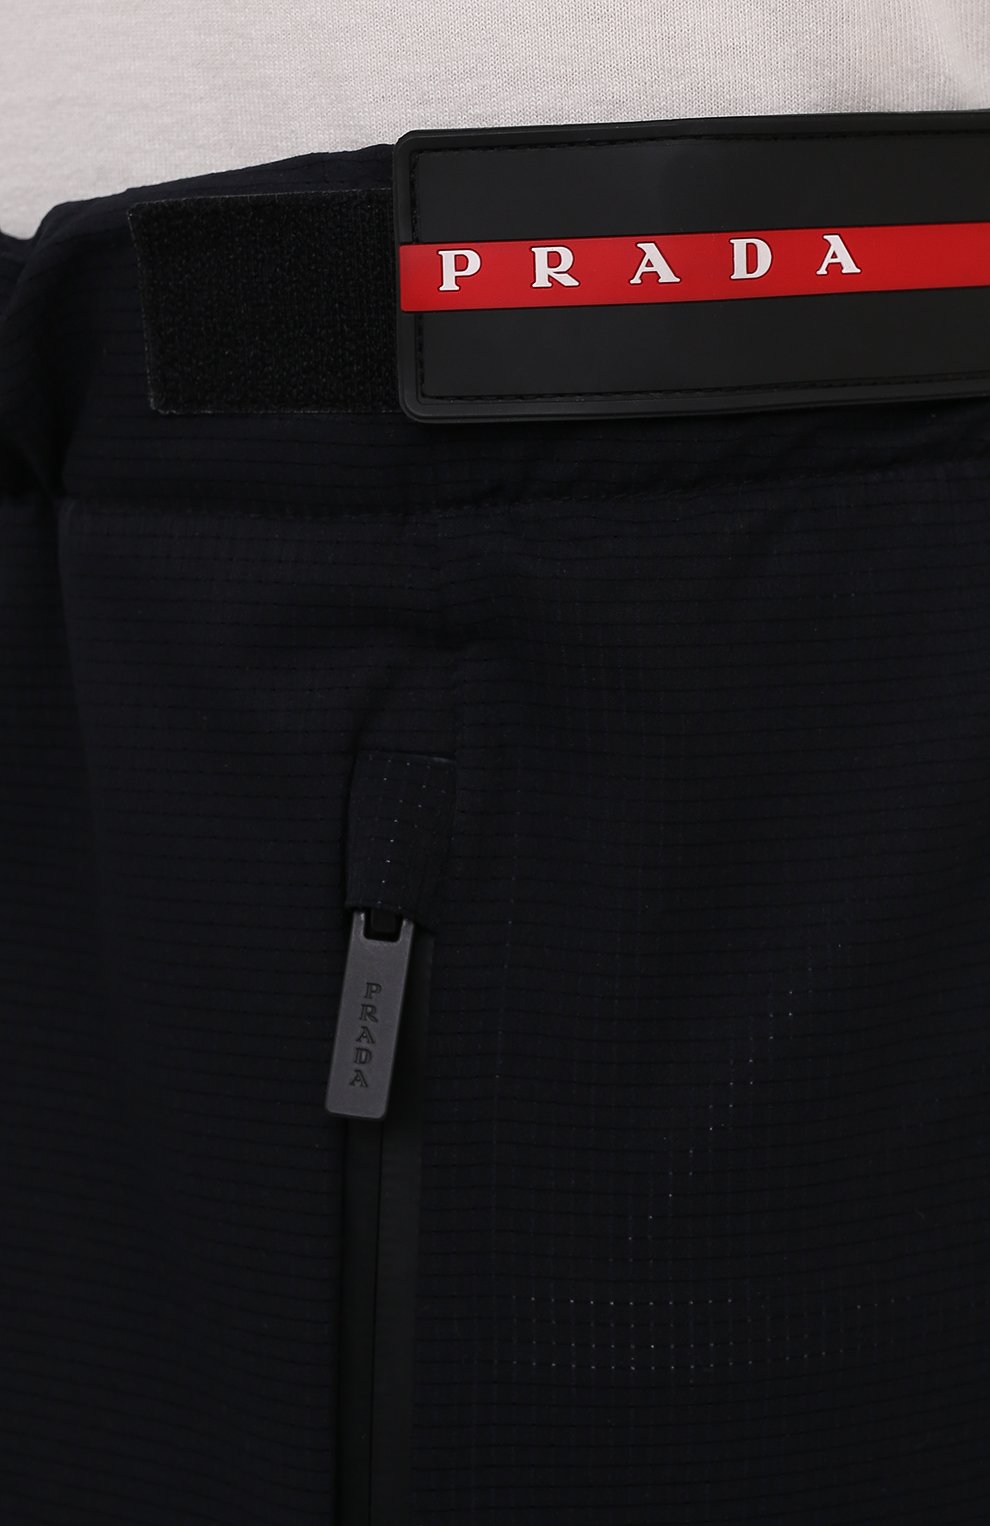 Мужские джоггеры PRADA черного цвета, арт. SPH61-1T2Z-F0002-201 | Фото 5 (Длина (брюки, джинсы): Стандартные; Материал внешний: Синтетический материал; Силуэт М (брюки): Джоггеры; Стили: Кэжуэл)